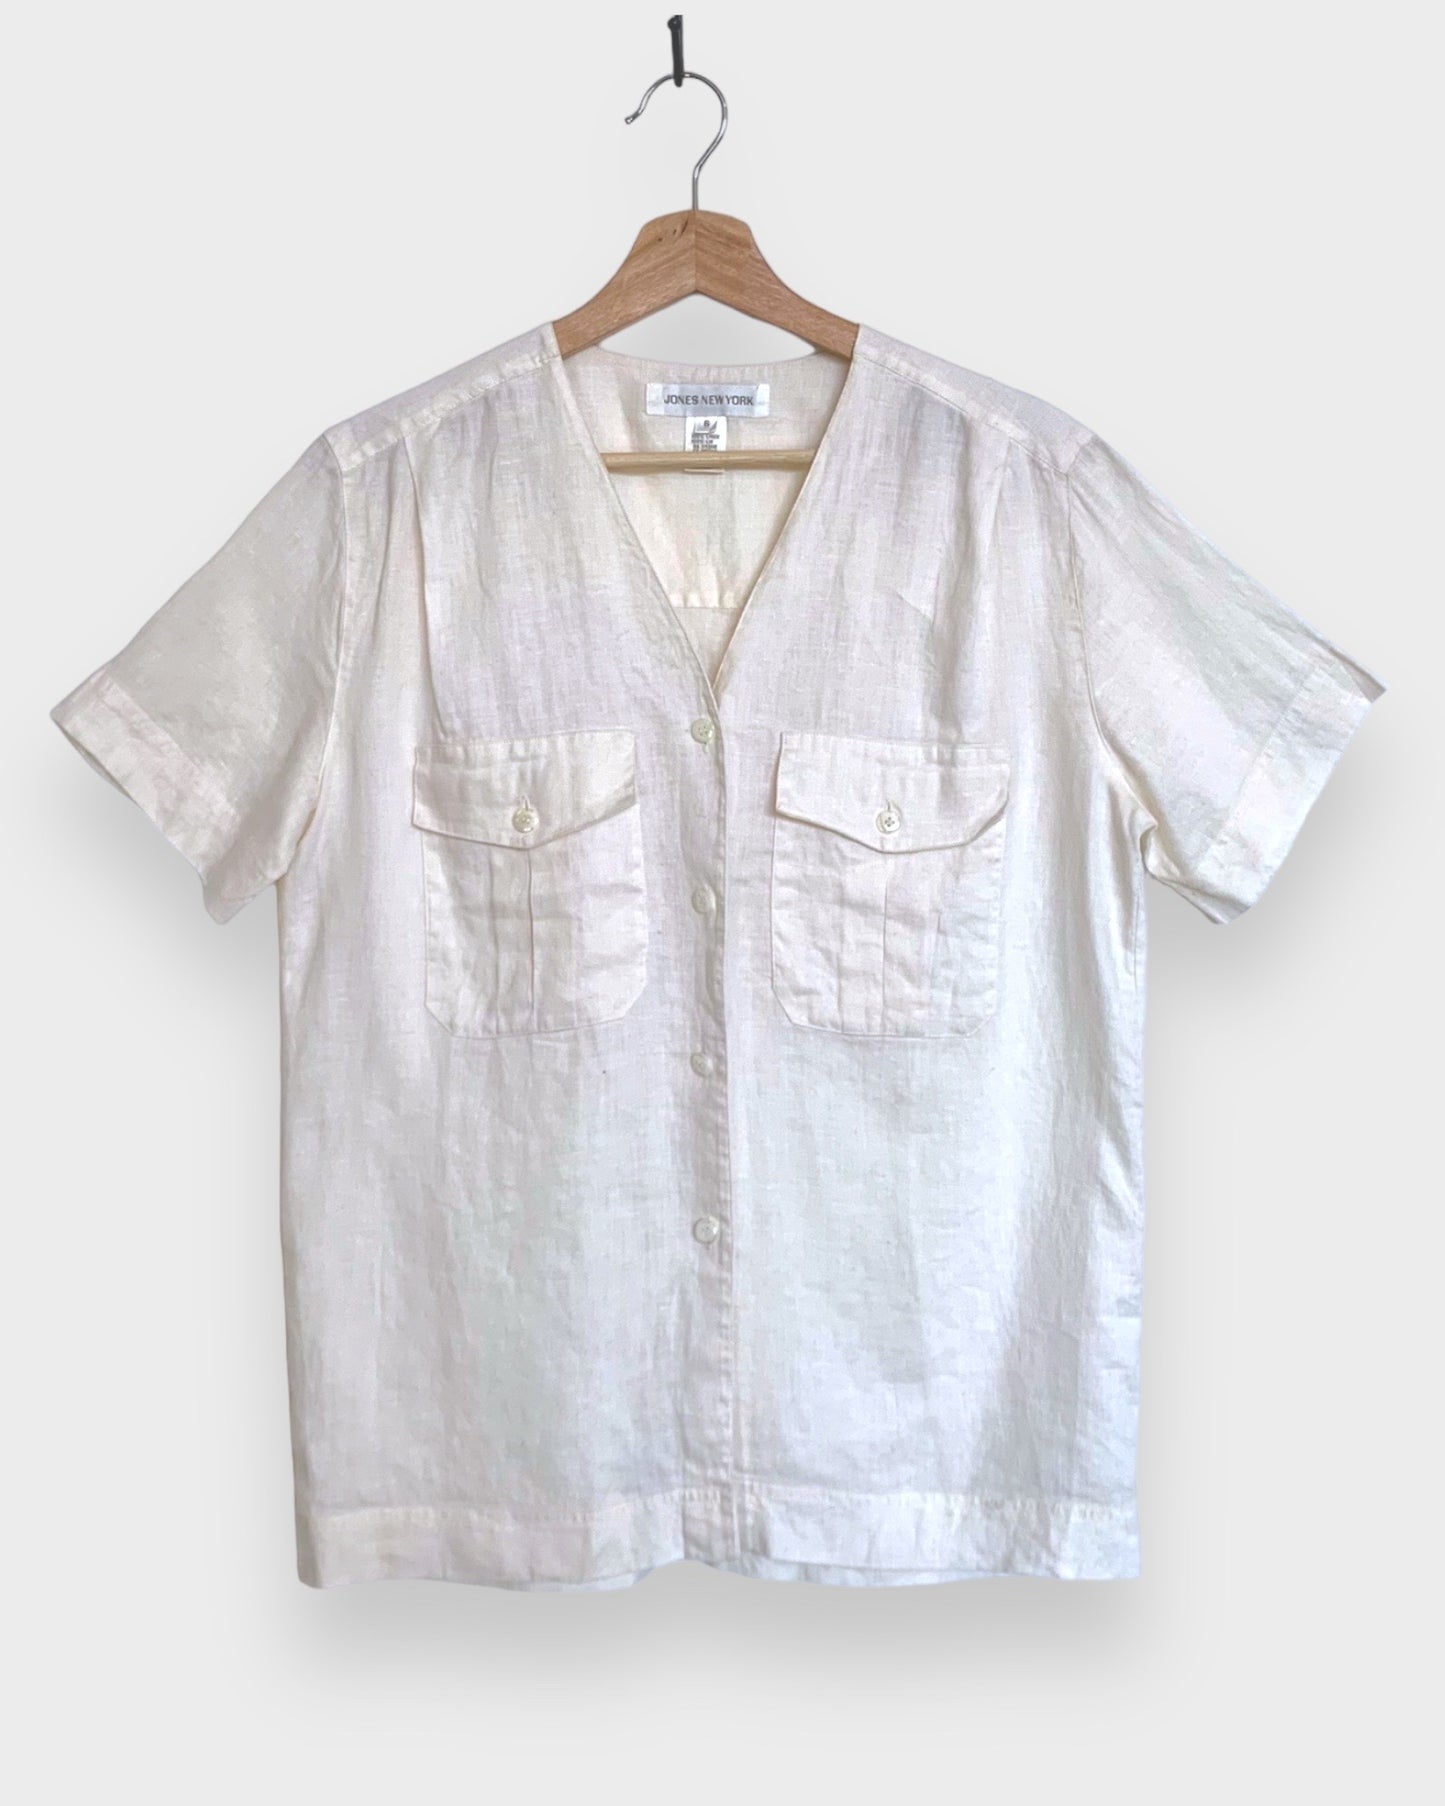 Jones New York white linen shirt